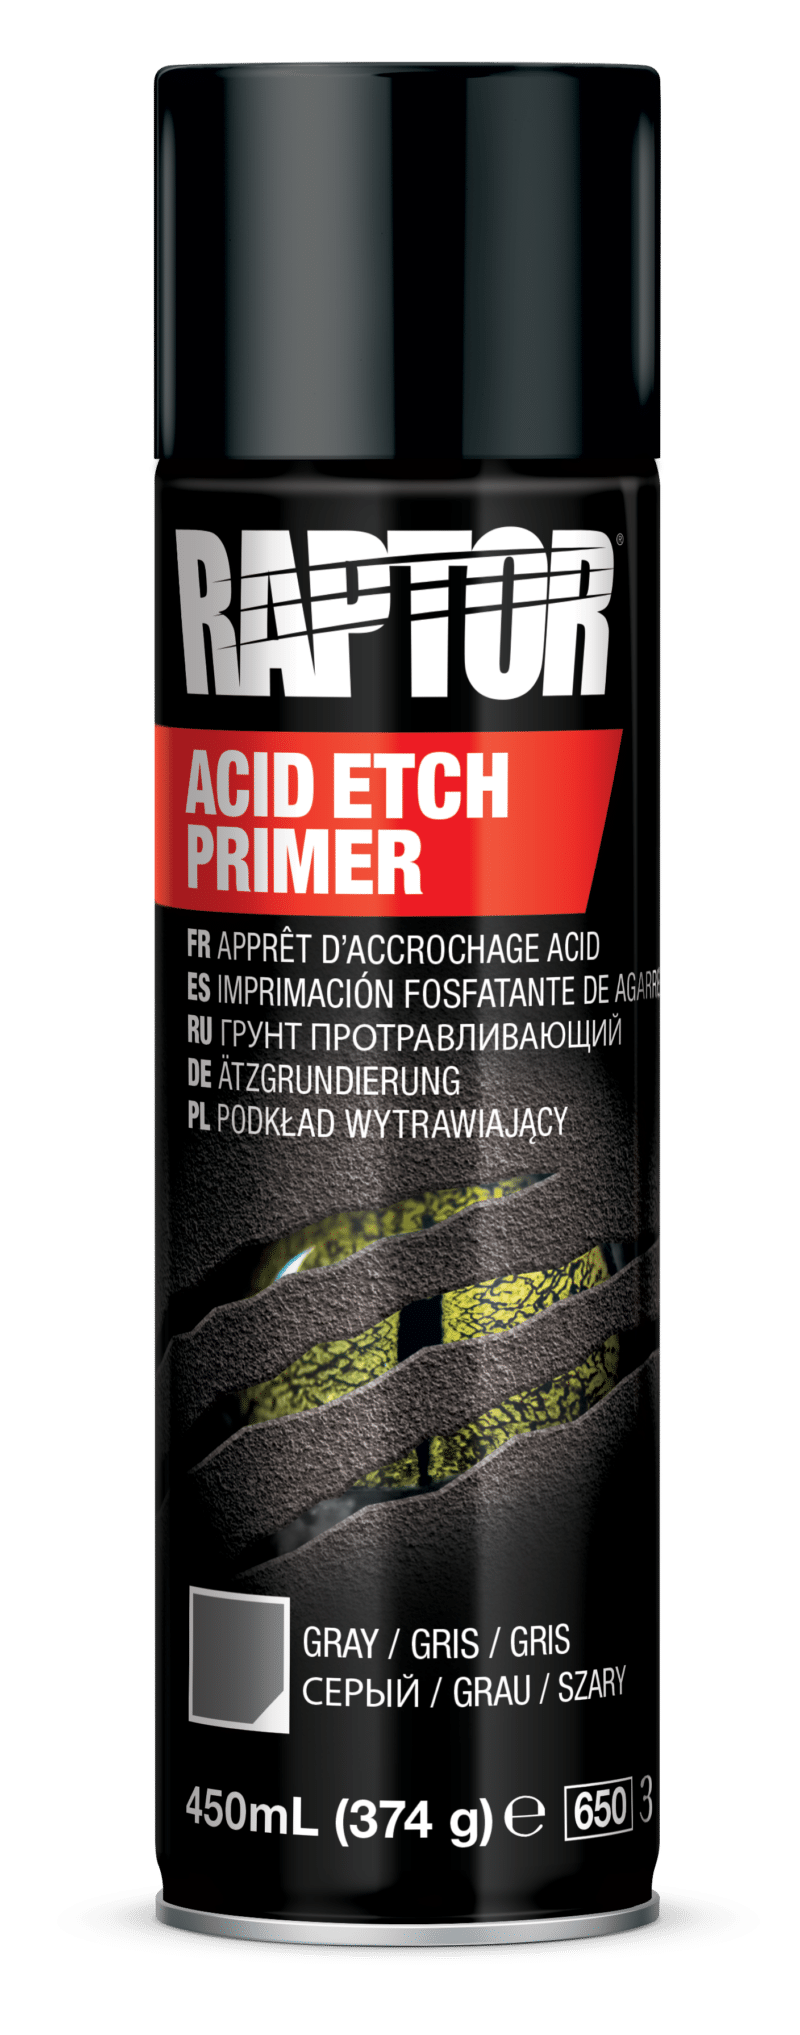 RPTEP AL Acid Etch Primer Aerosol 450mL ROW